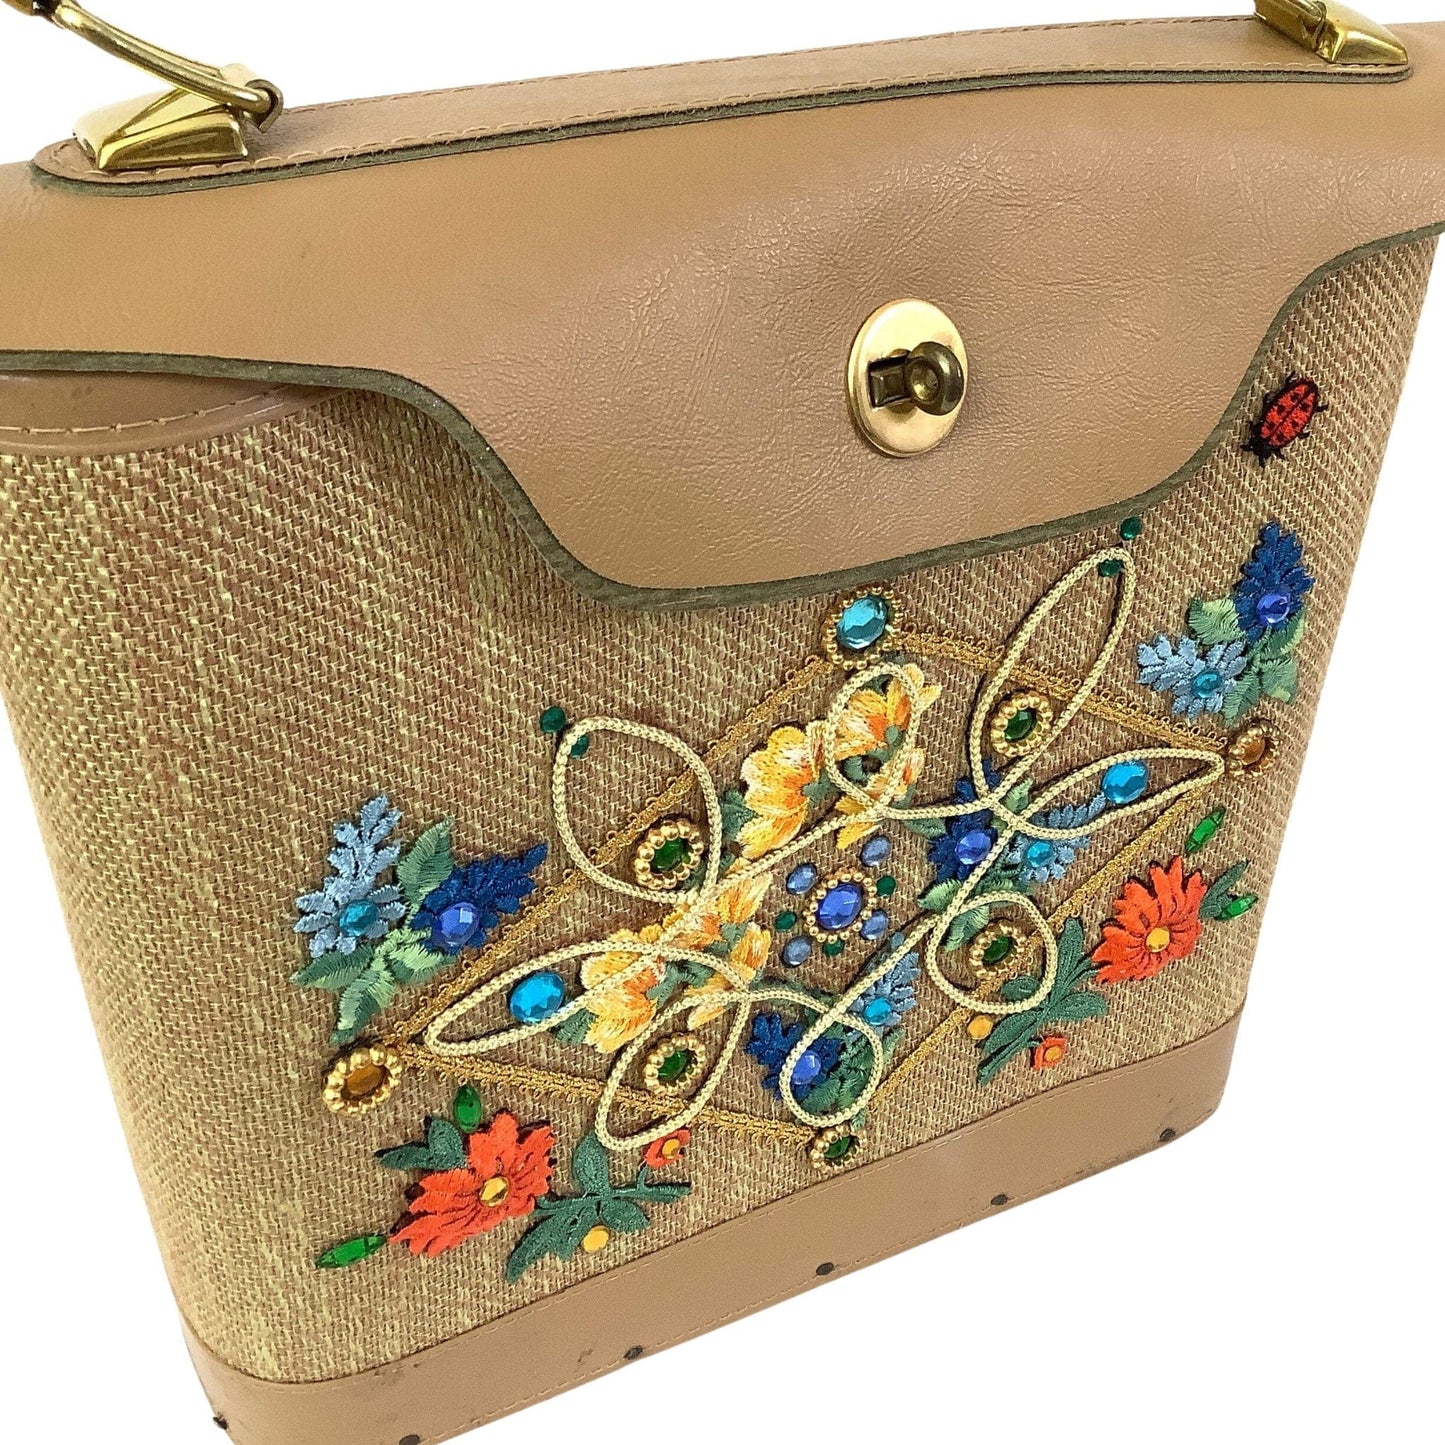 Applique Embellished Bag Multi / Mixed / Vintage 1950s